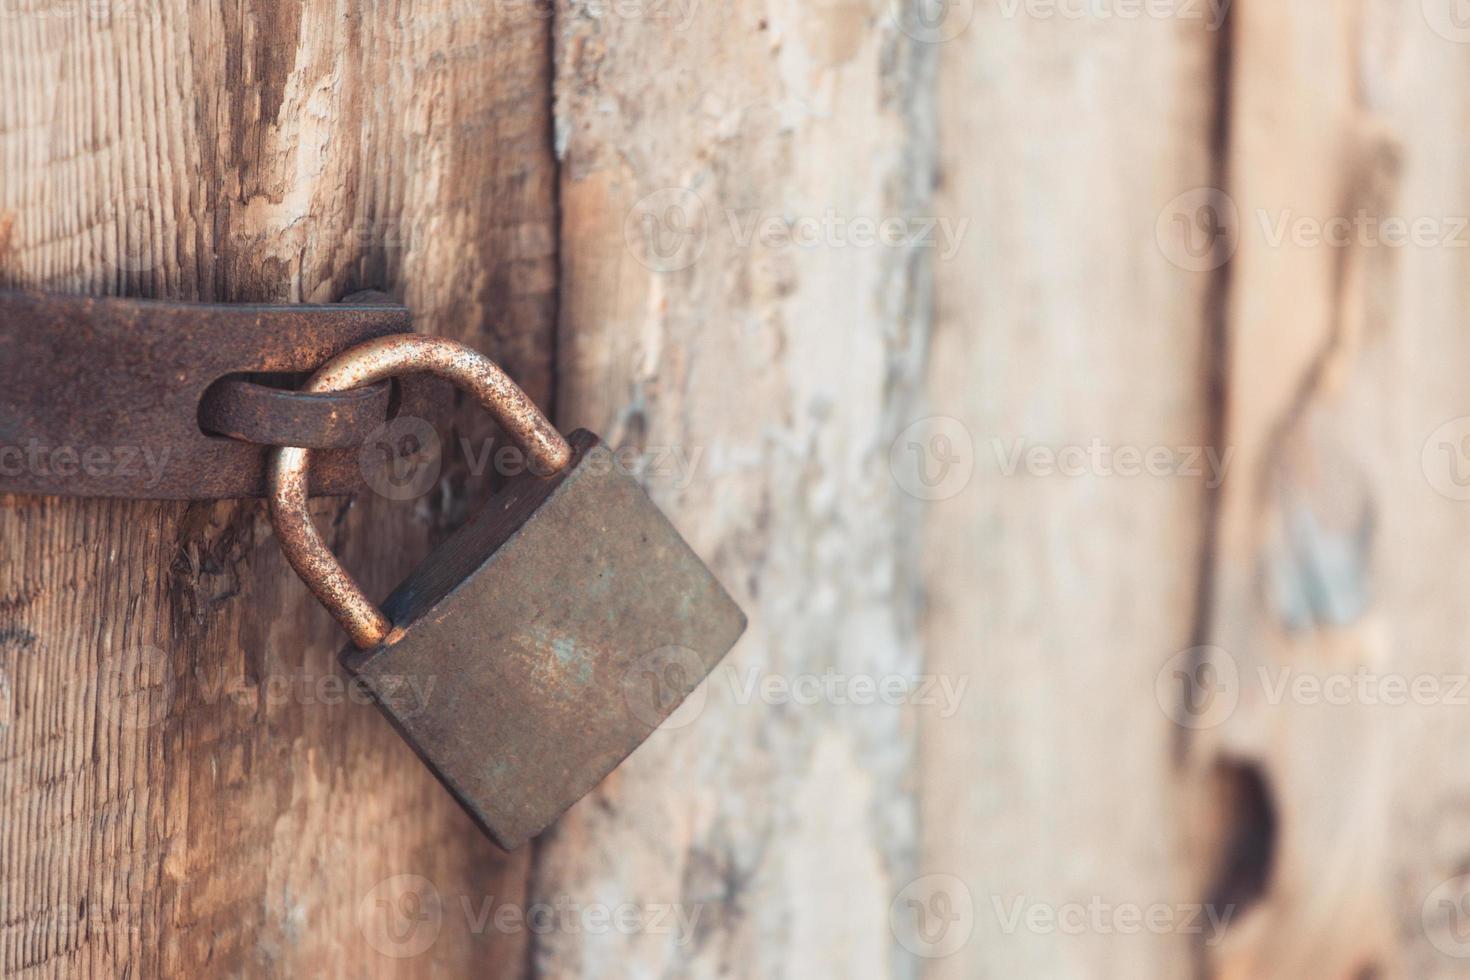 L'ancien et vintage cadenas en métal avec de la rouille sur la porte en bois verrouillée pour la sécurité photo